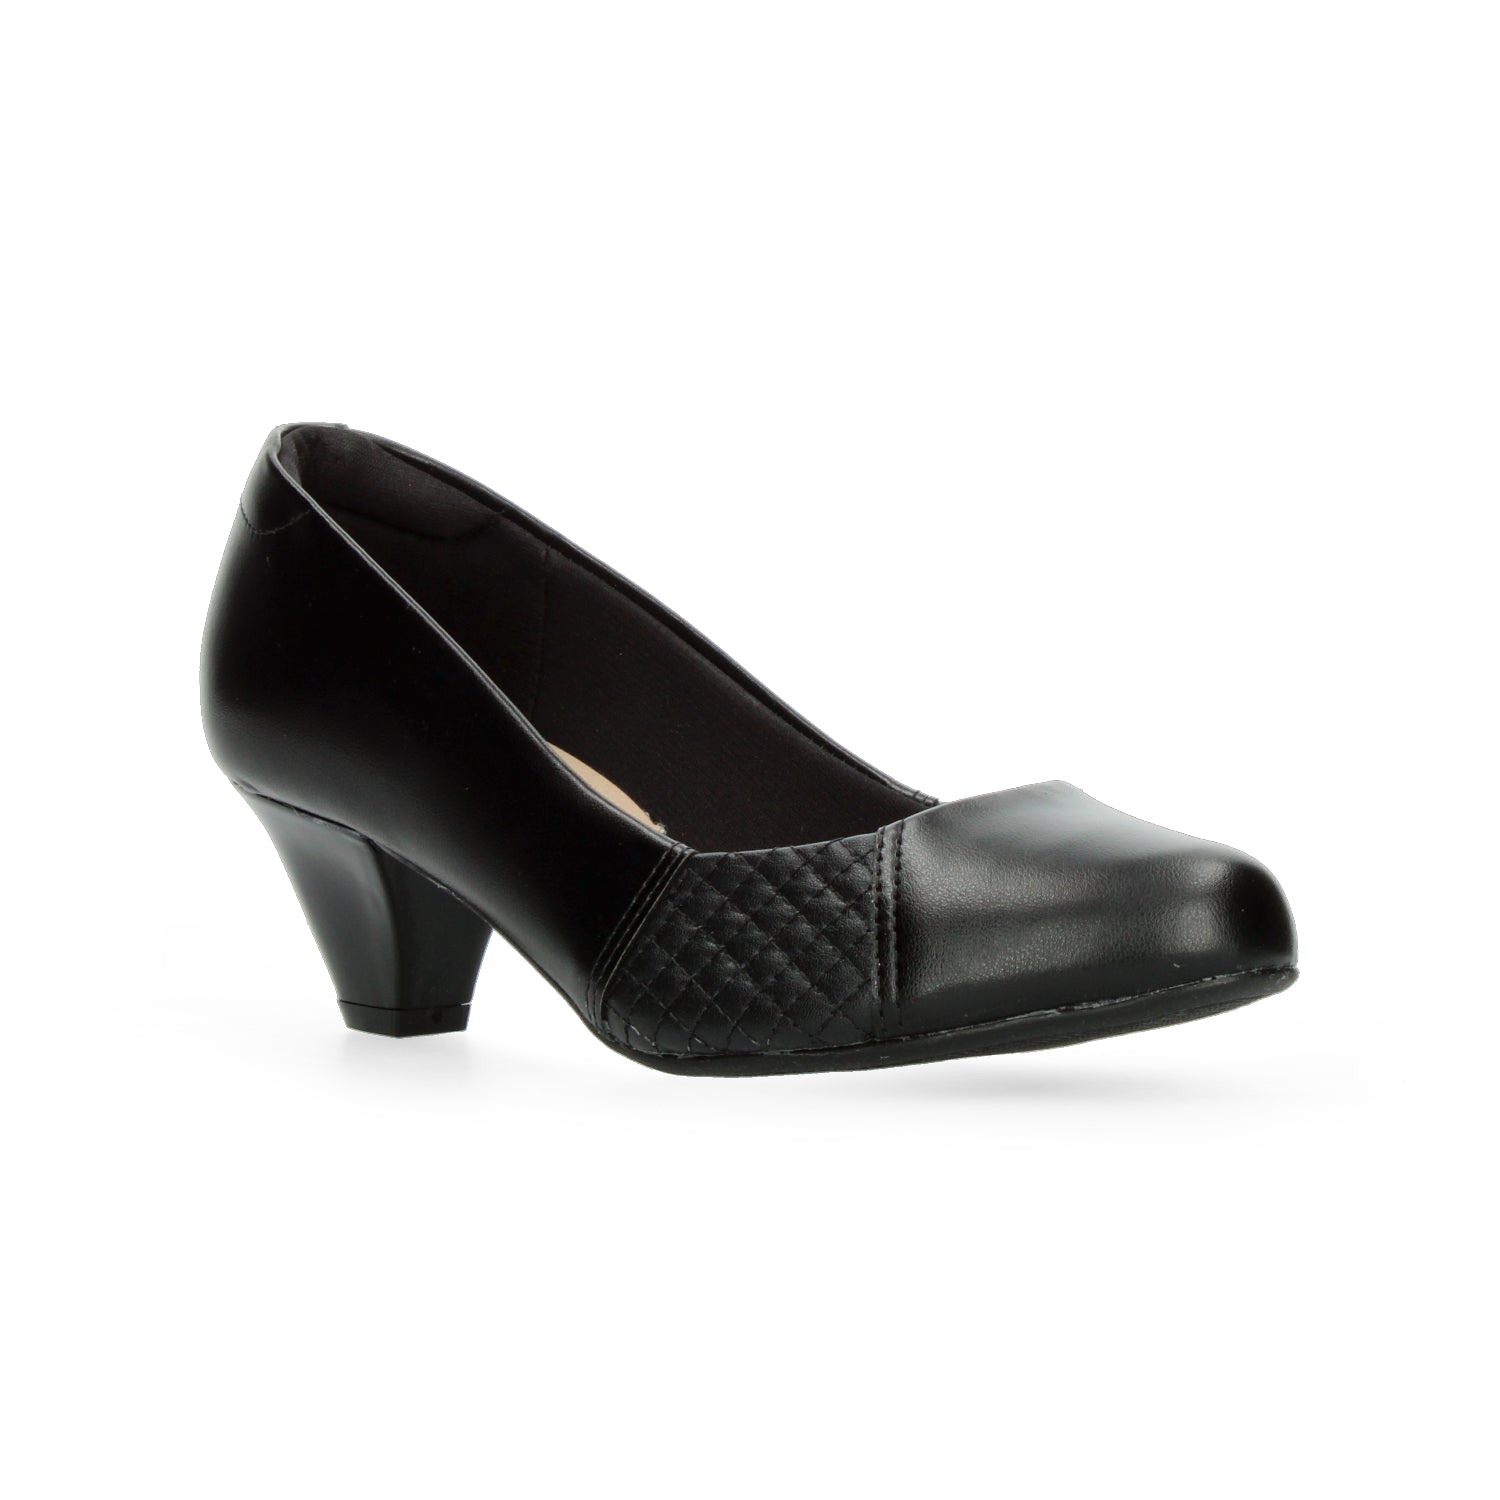 Zapatillas Negro para Mujer [MOD5] - Zapaterias Torreon